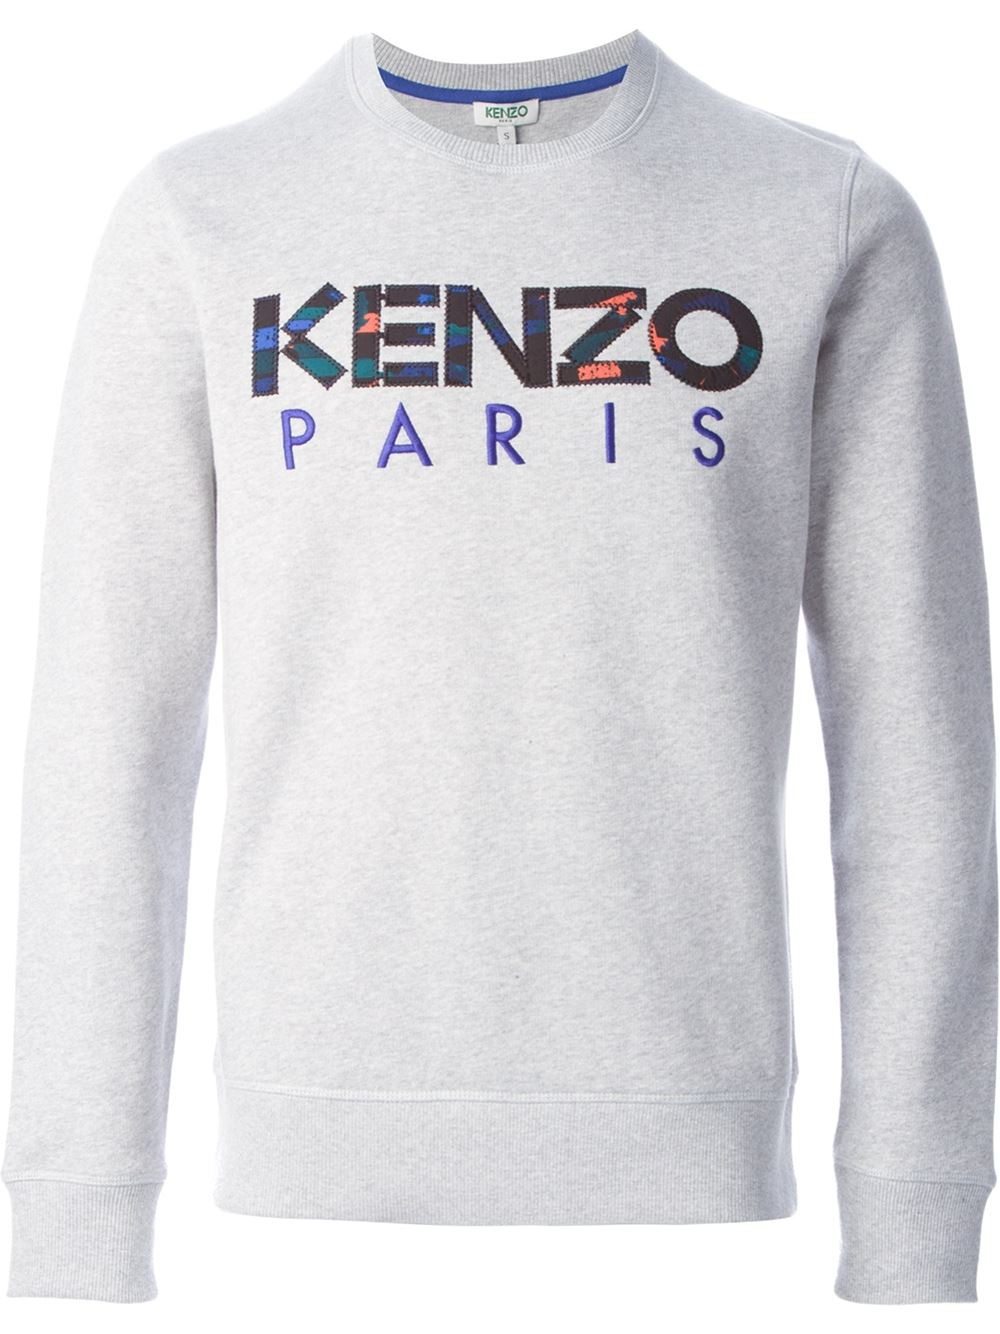 KENZO Paris Sweatshirt in Grey (Gray 